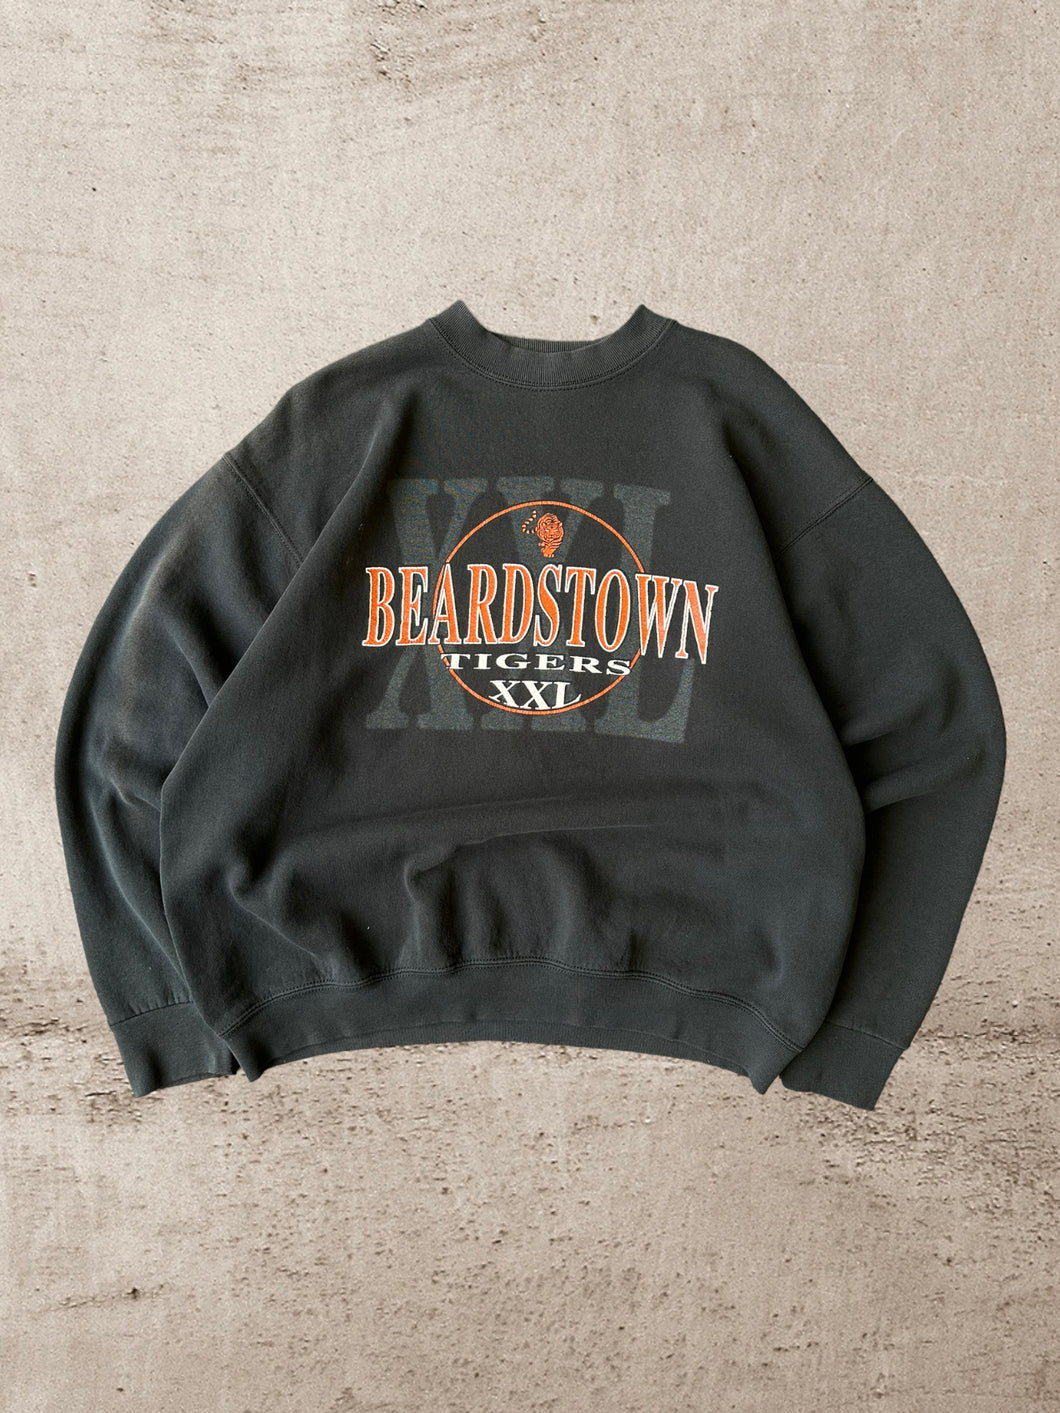 90s Beardstown Tigers Crewneck - Large